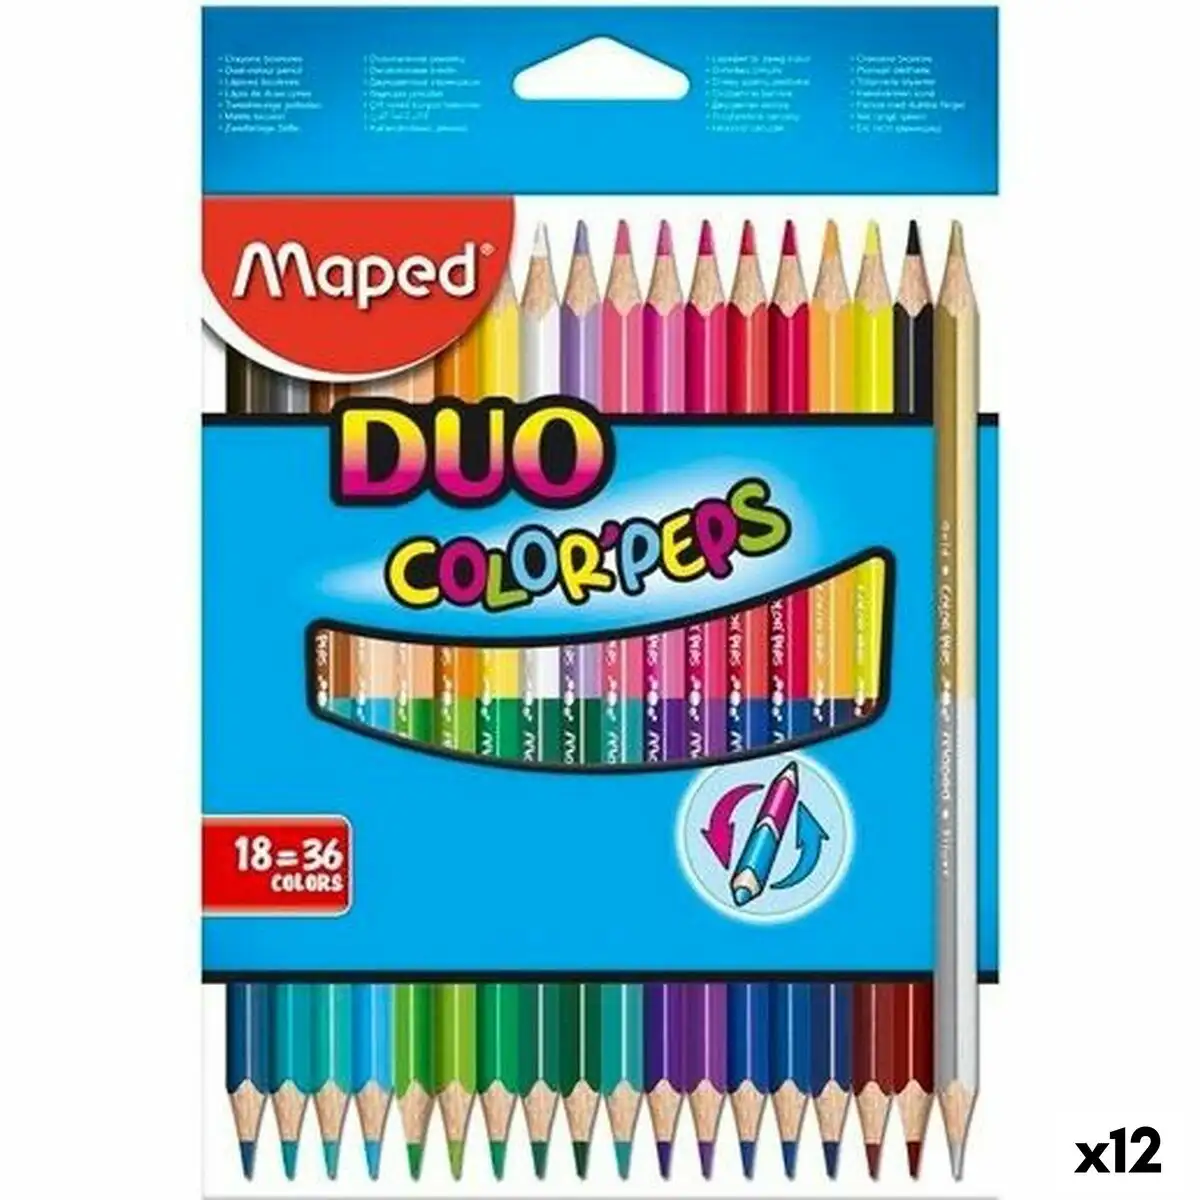 Crayons de couleur maped duo color peps multicouleur 18 pieces double pointe 12 unites _1422. DIAYTAR SENEGAL - Votre Boutique en Ligne, Votre Choix Illimité. Parcourez nos rayons et découvrez des produits qui vous inspirent, de la mode à la maison et bien plus.